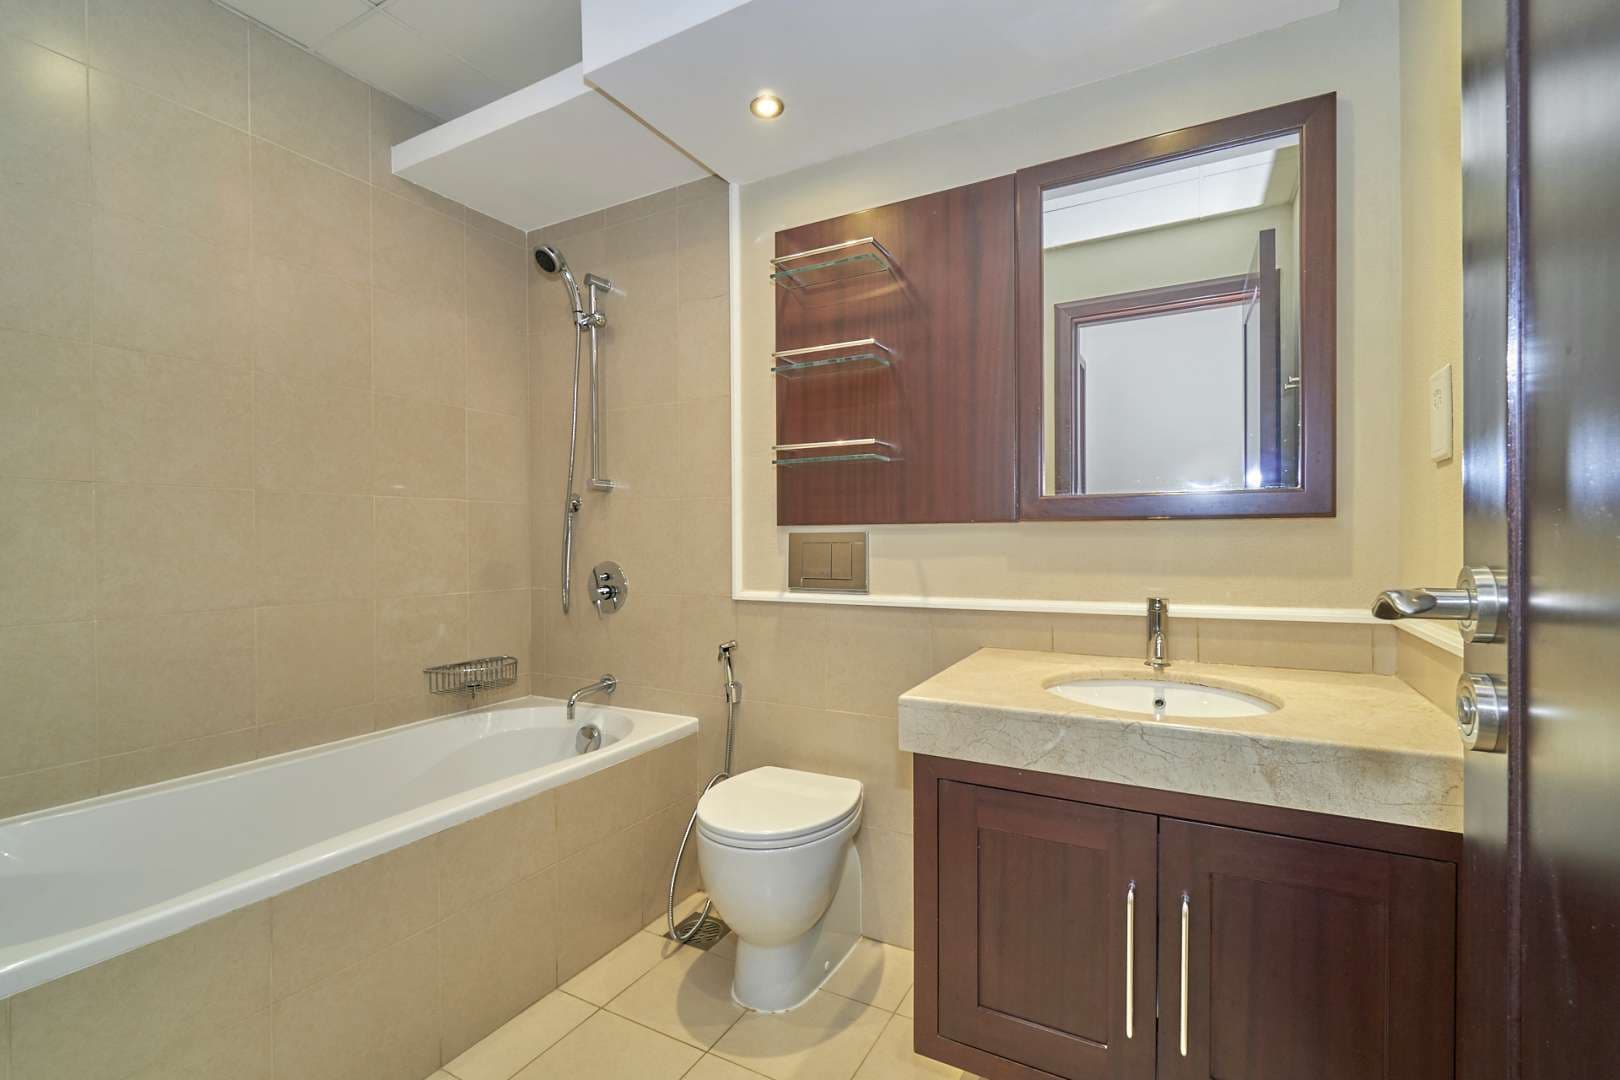 2 Bedroom Apartment For Rent Mosela Lp07266 11a33e9d2ca95d00.jpg